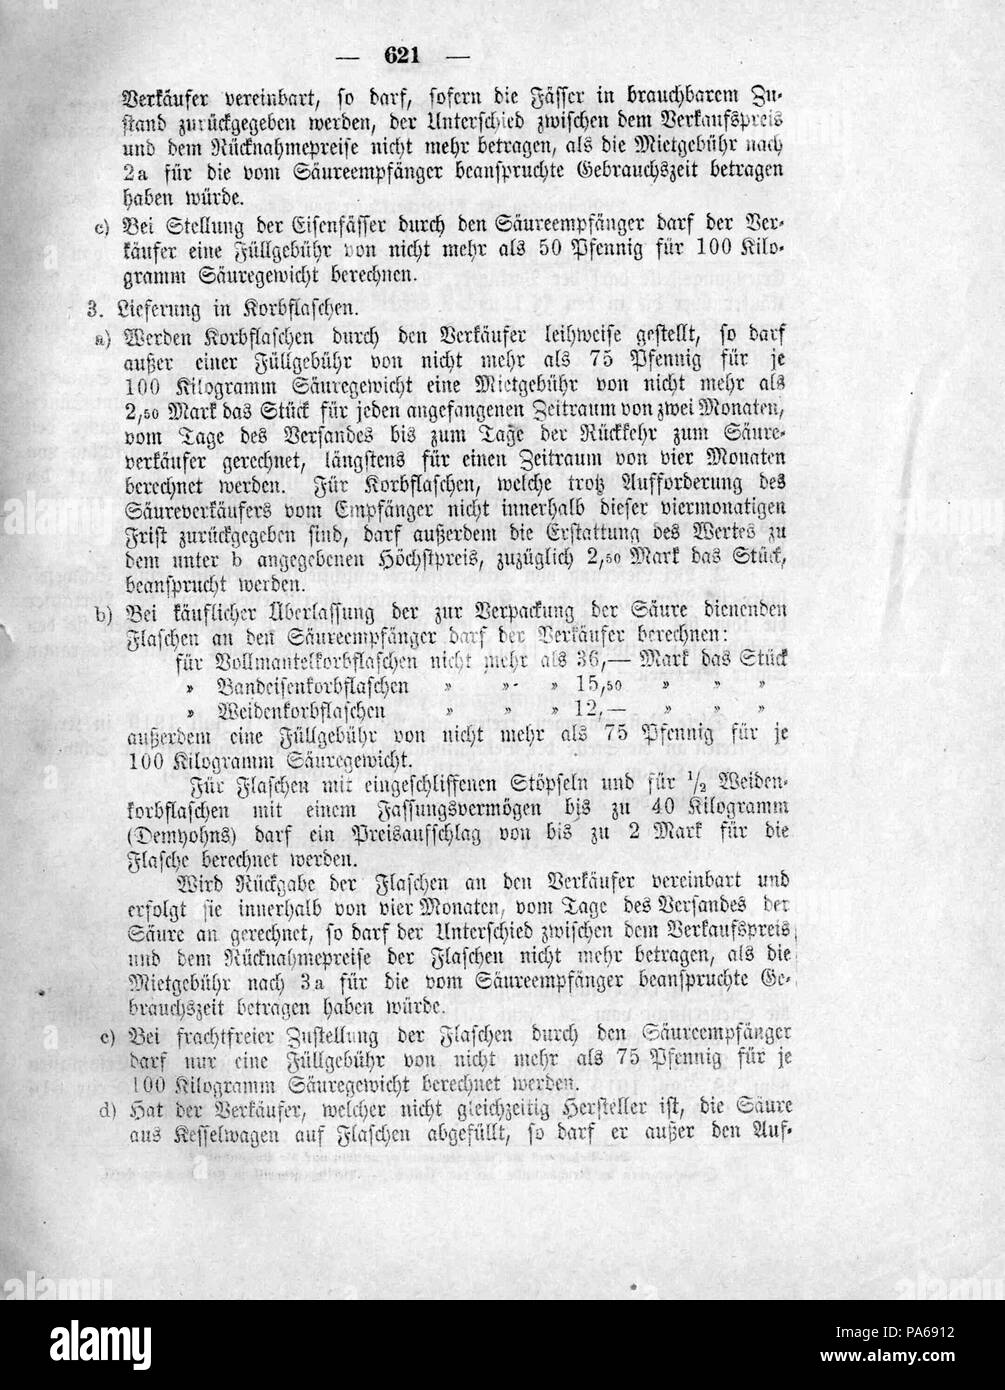 489 Deutsches Reichsgesetzblatt 1919 126 0621 Foto Stock